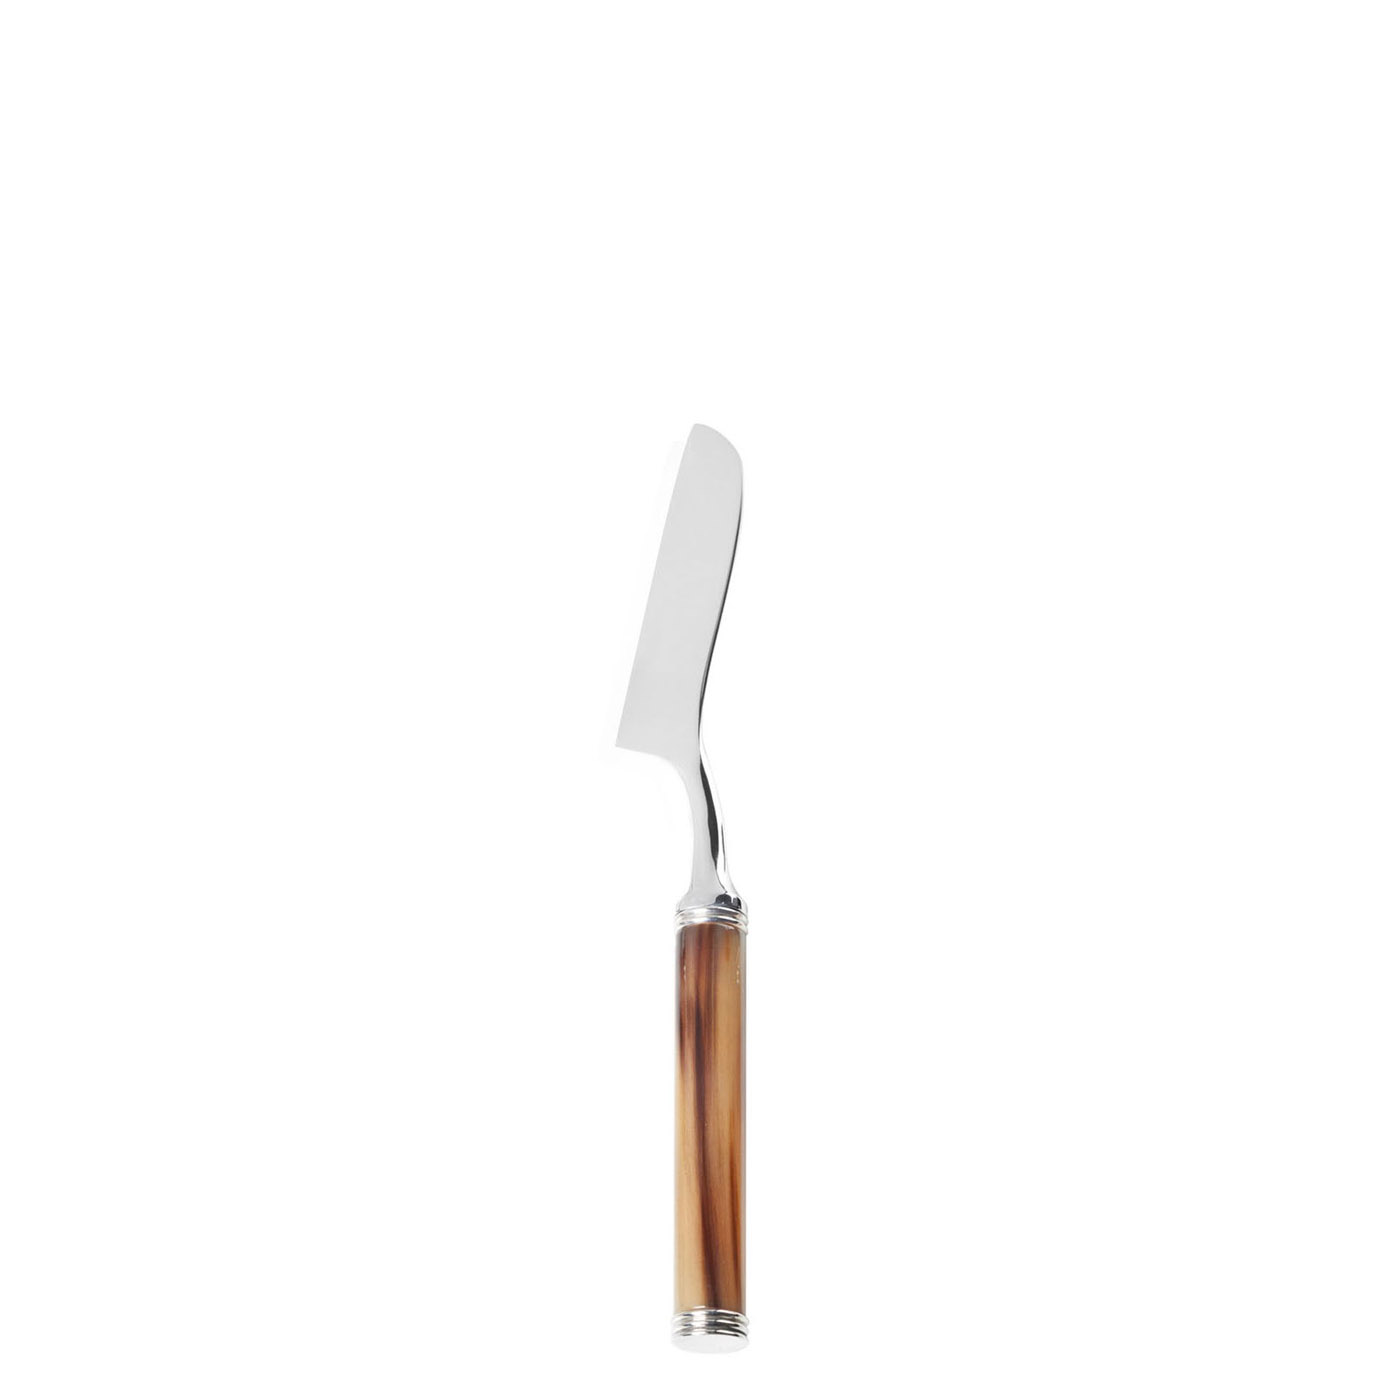 Accessori tavola - Pule coltello per formaggio tenero in corno e acciaio inox - Arcahorn